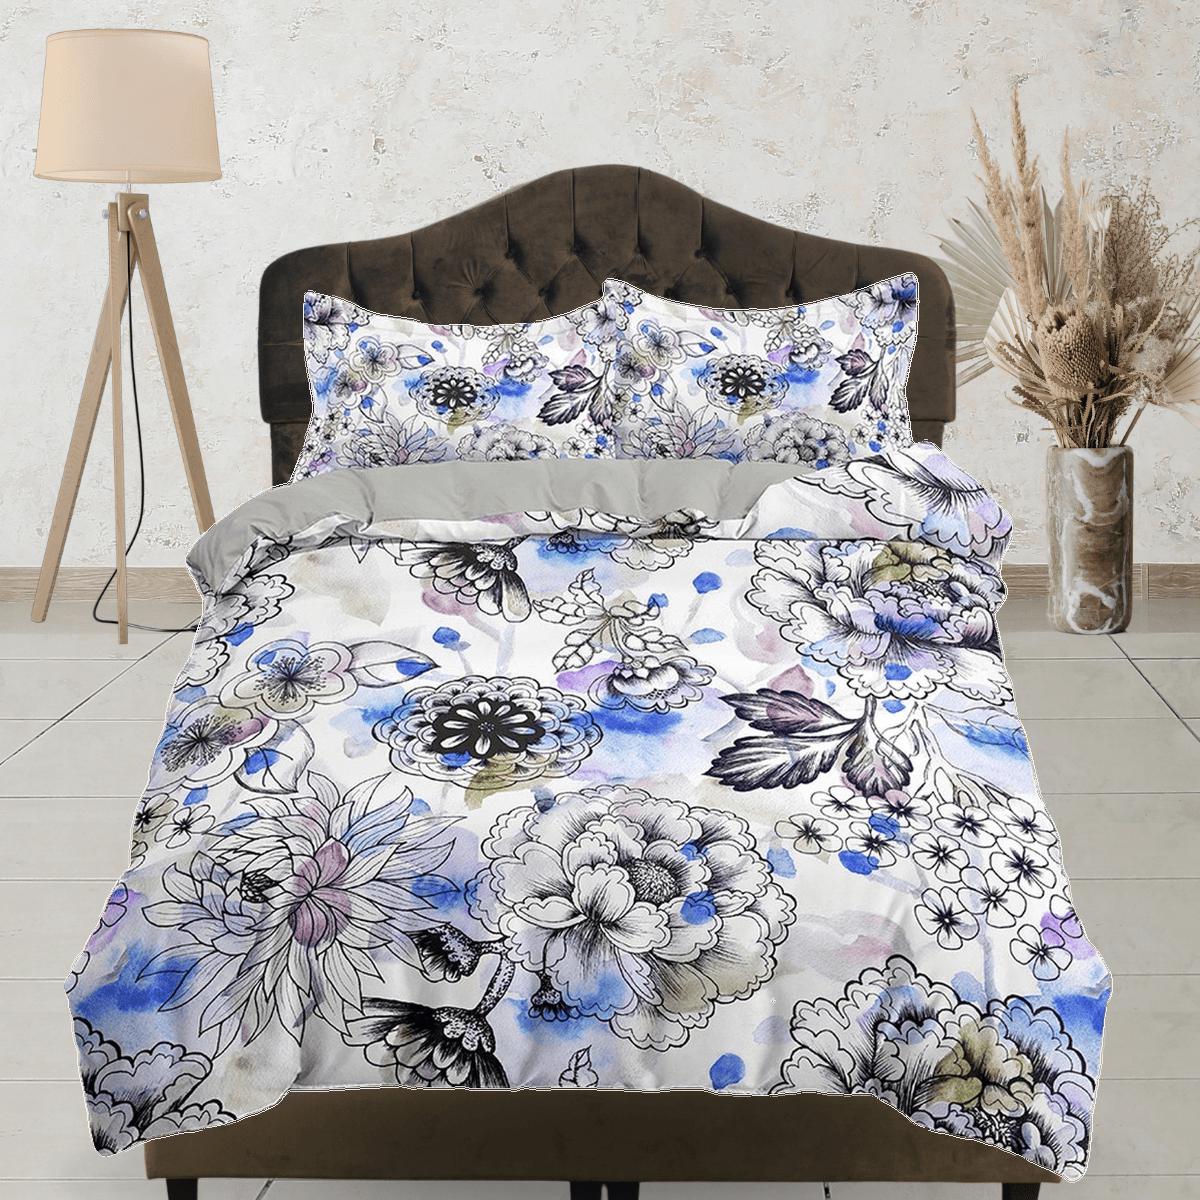 daintyduvet Blue tinted floral bedding, luxury duvet cover queen, king, boho duvet, designer bedding, aesthetic bedding, maximalist full size bedding